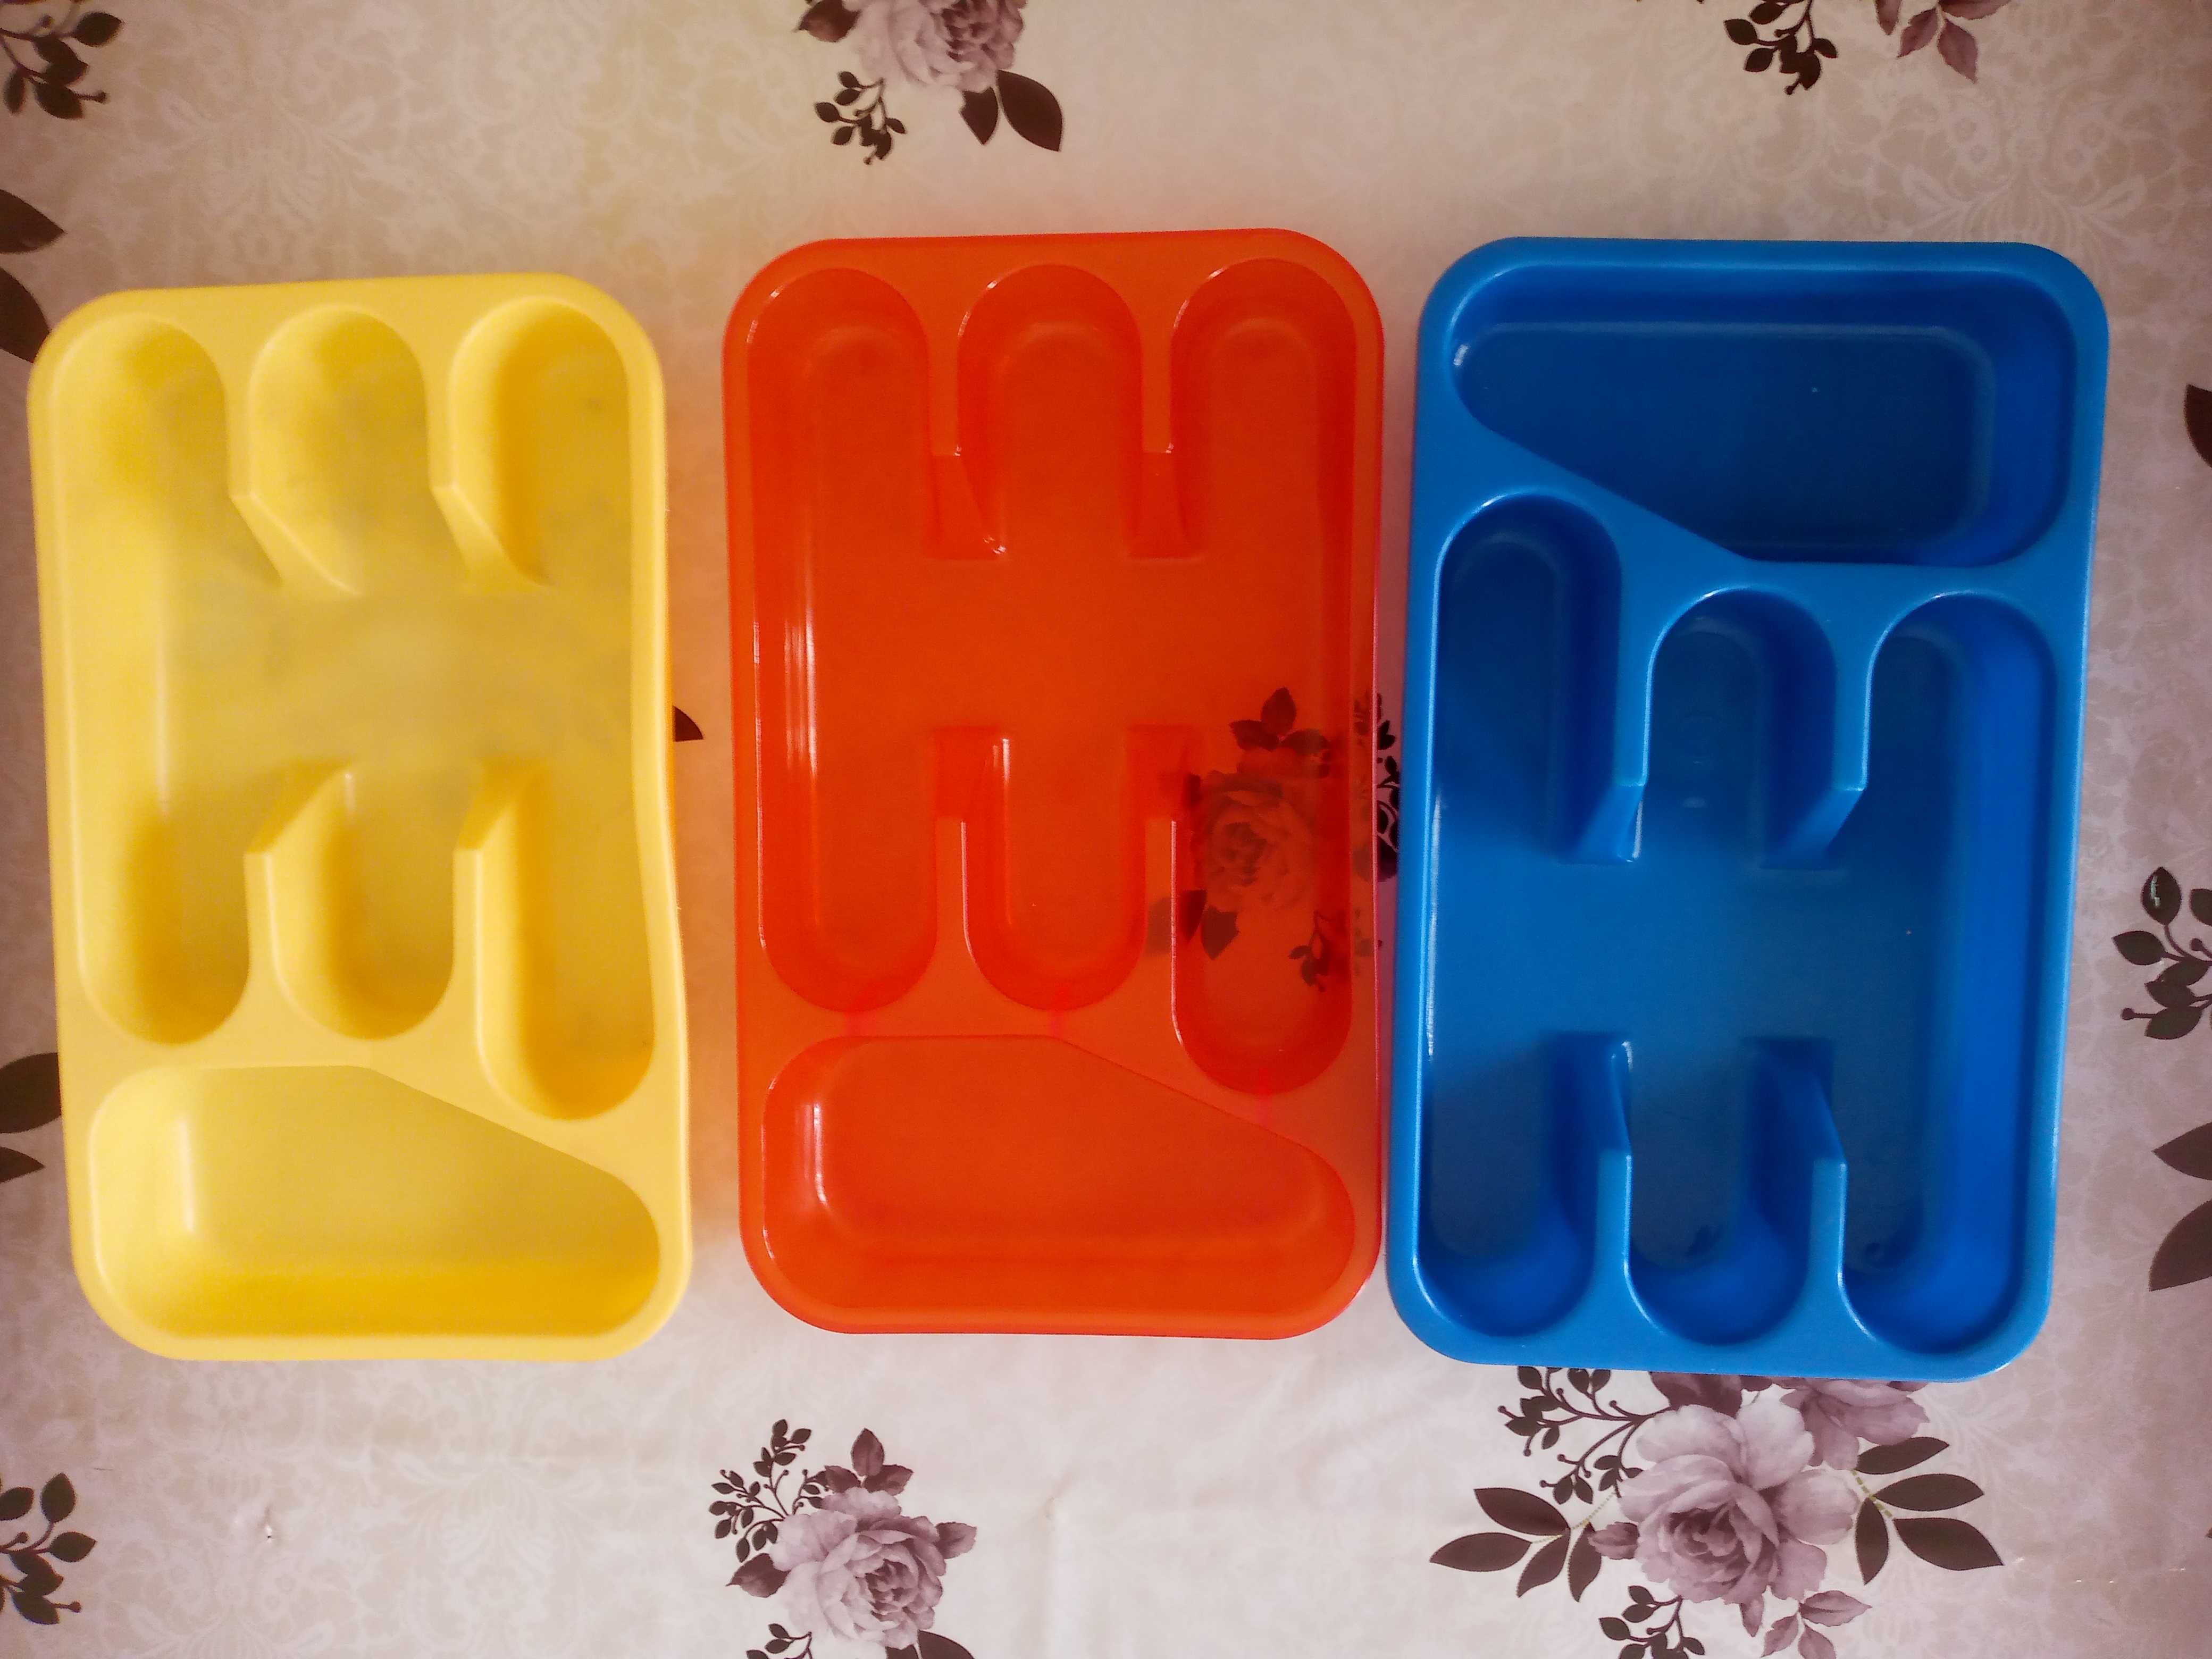 Пластиковый органайзер для кухни(см фото).Цена 10 тыс 1 шт